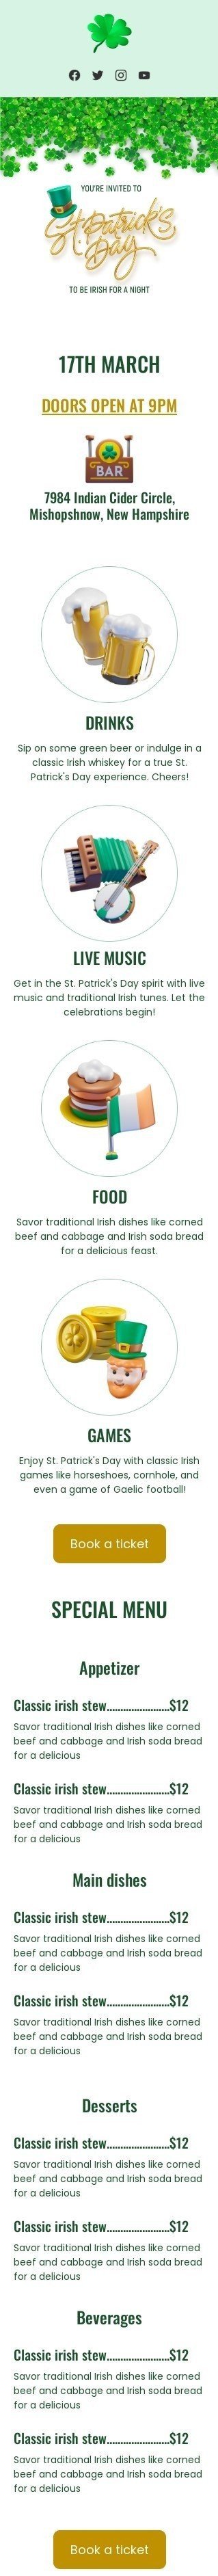 Шаблон письма к празднику День Св. Патрика «Стать ирландцем на одну ночь» для индустрии «Рестораны» мобильный вид